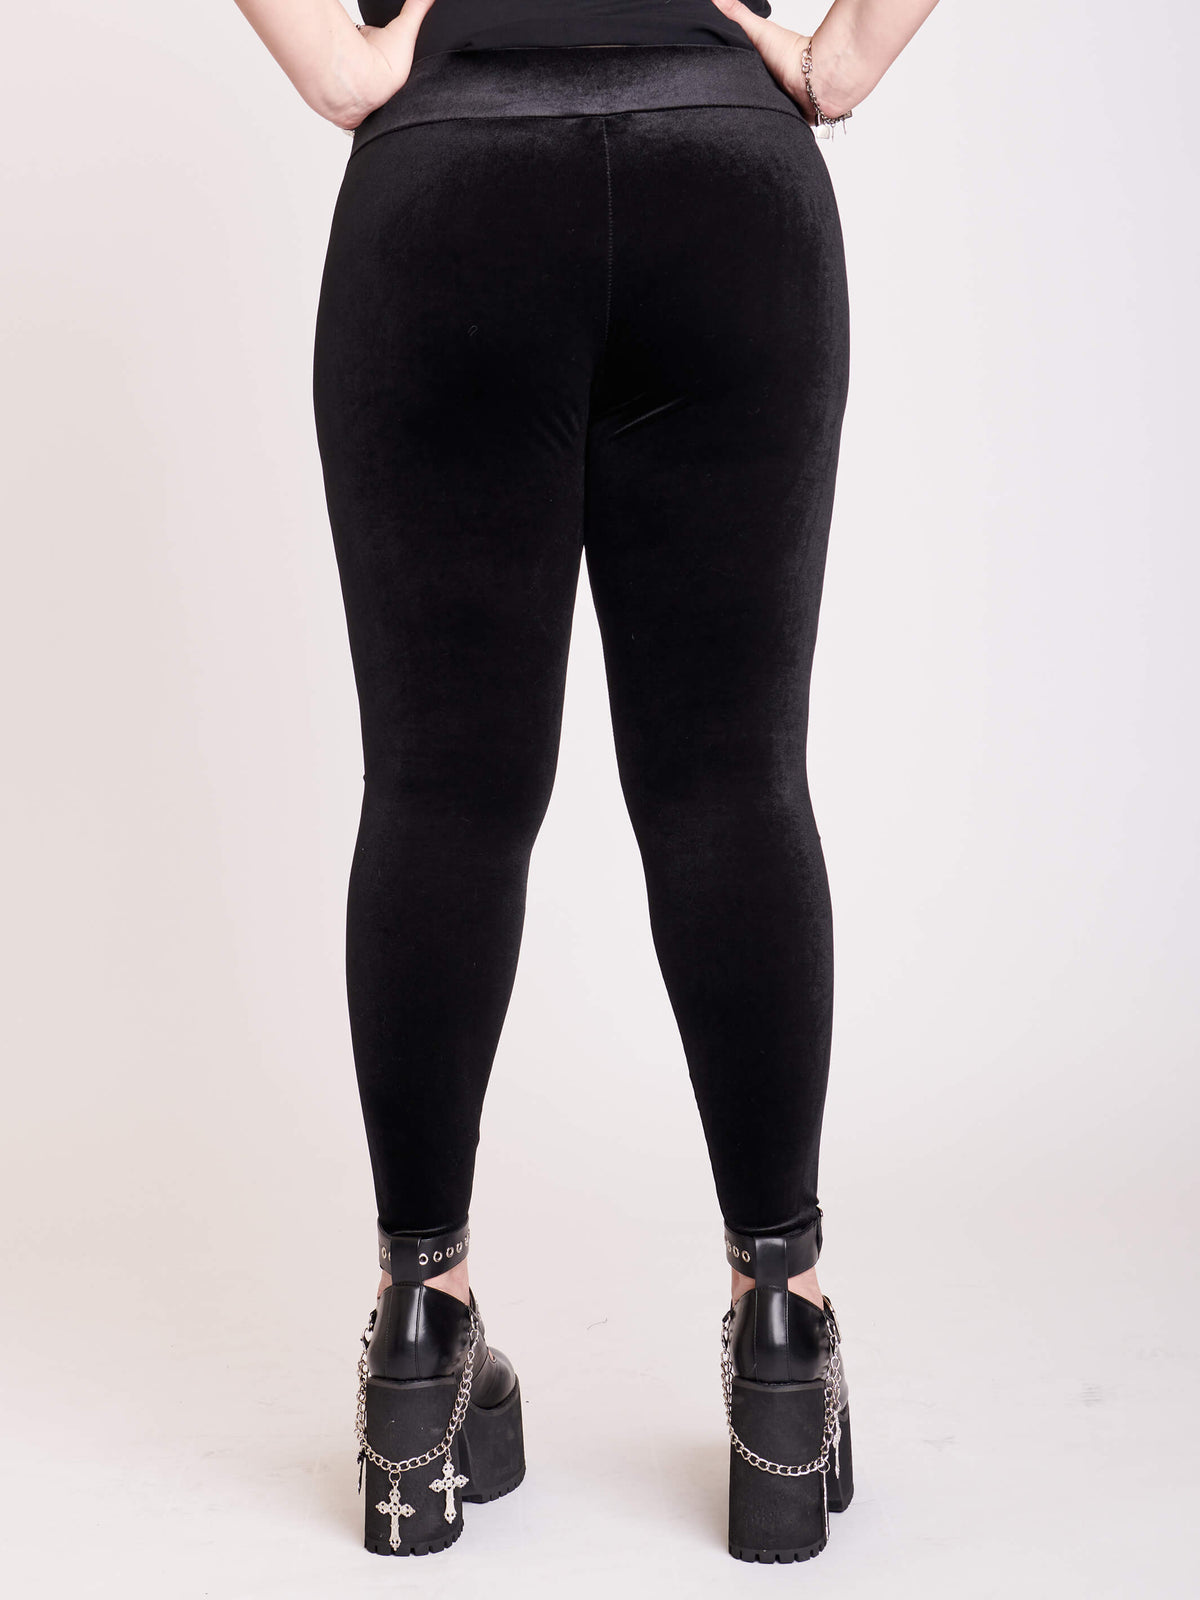 Black velvet stretch leggings